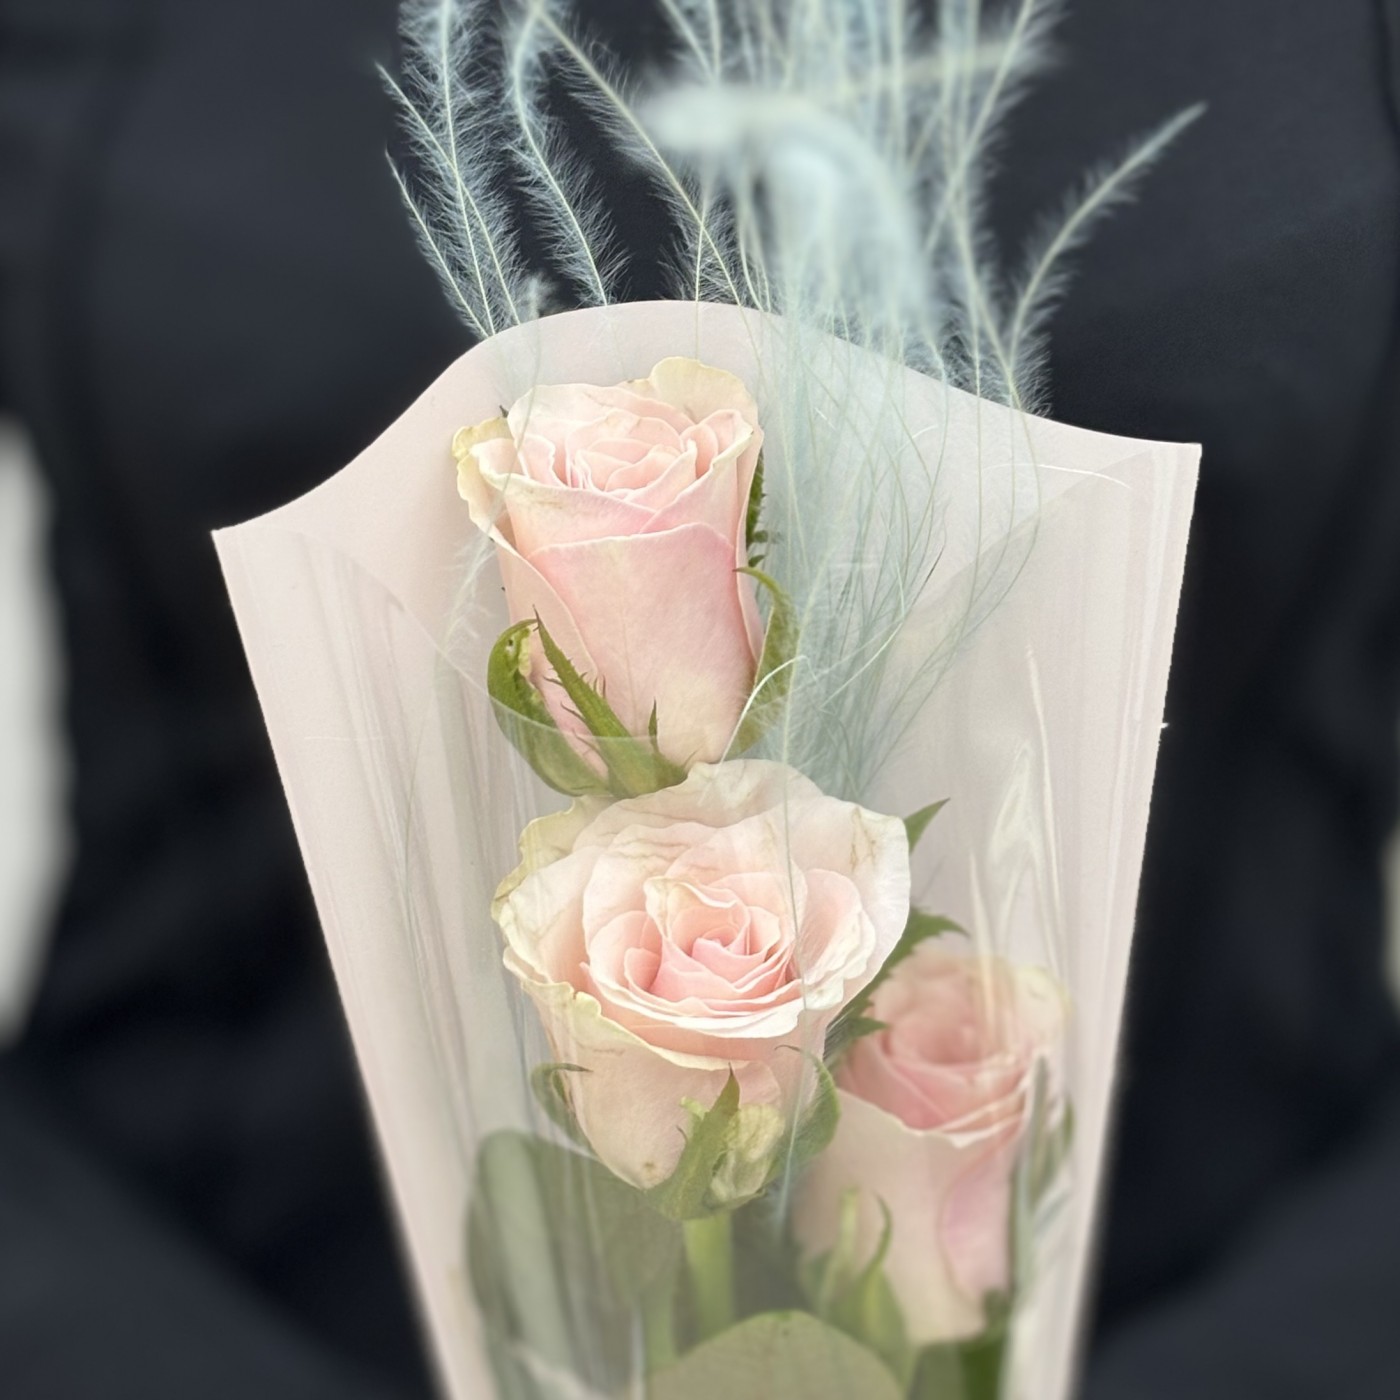 3 нежно-розовые розы в упаковке